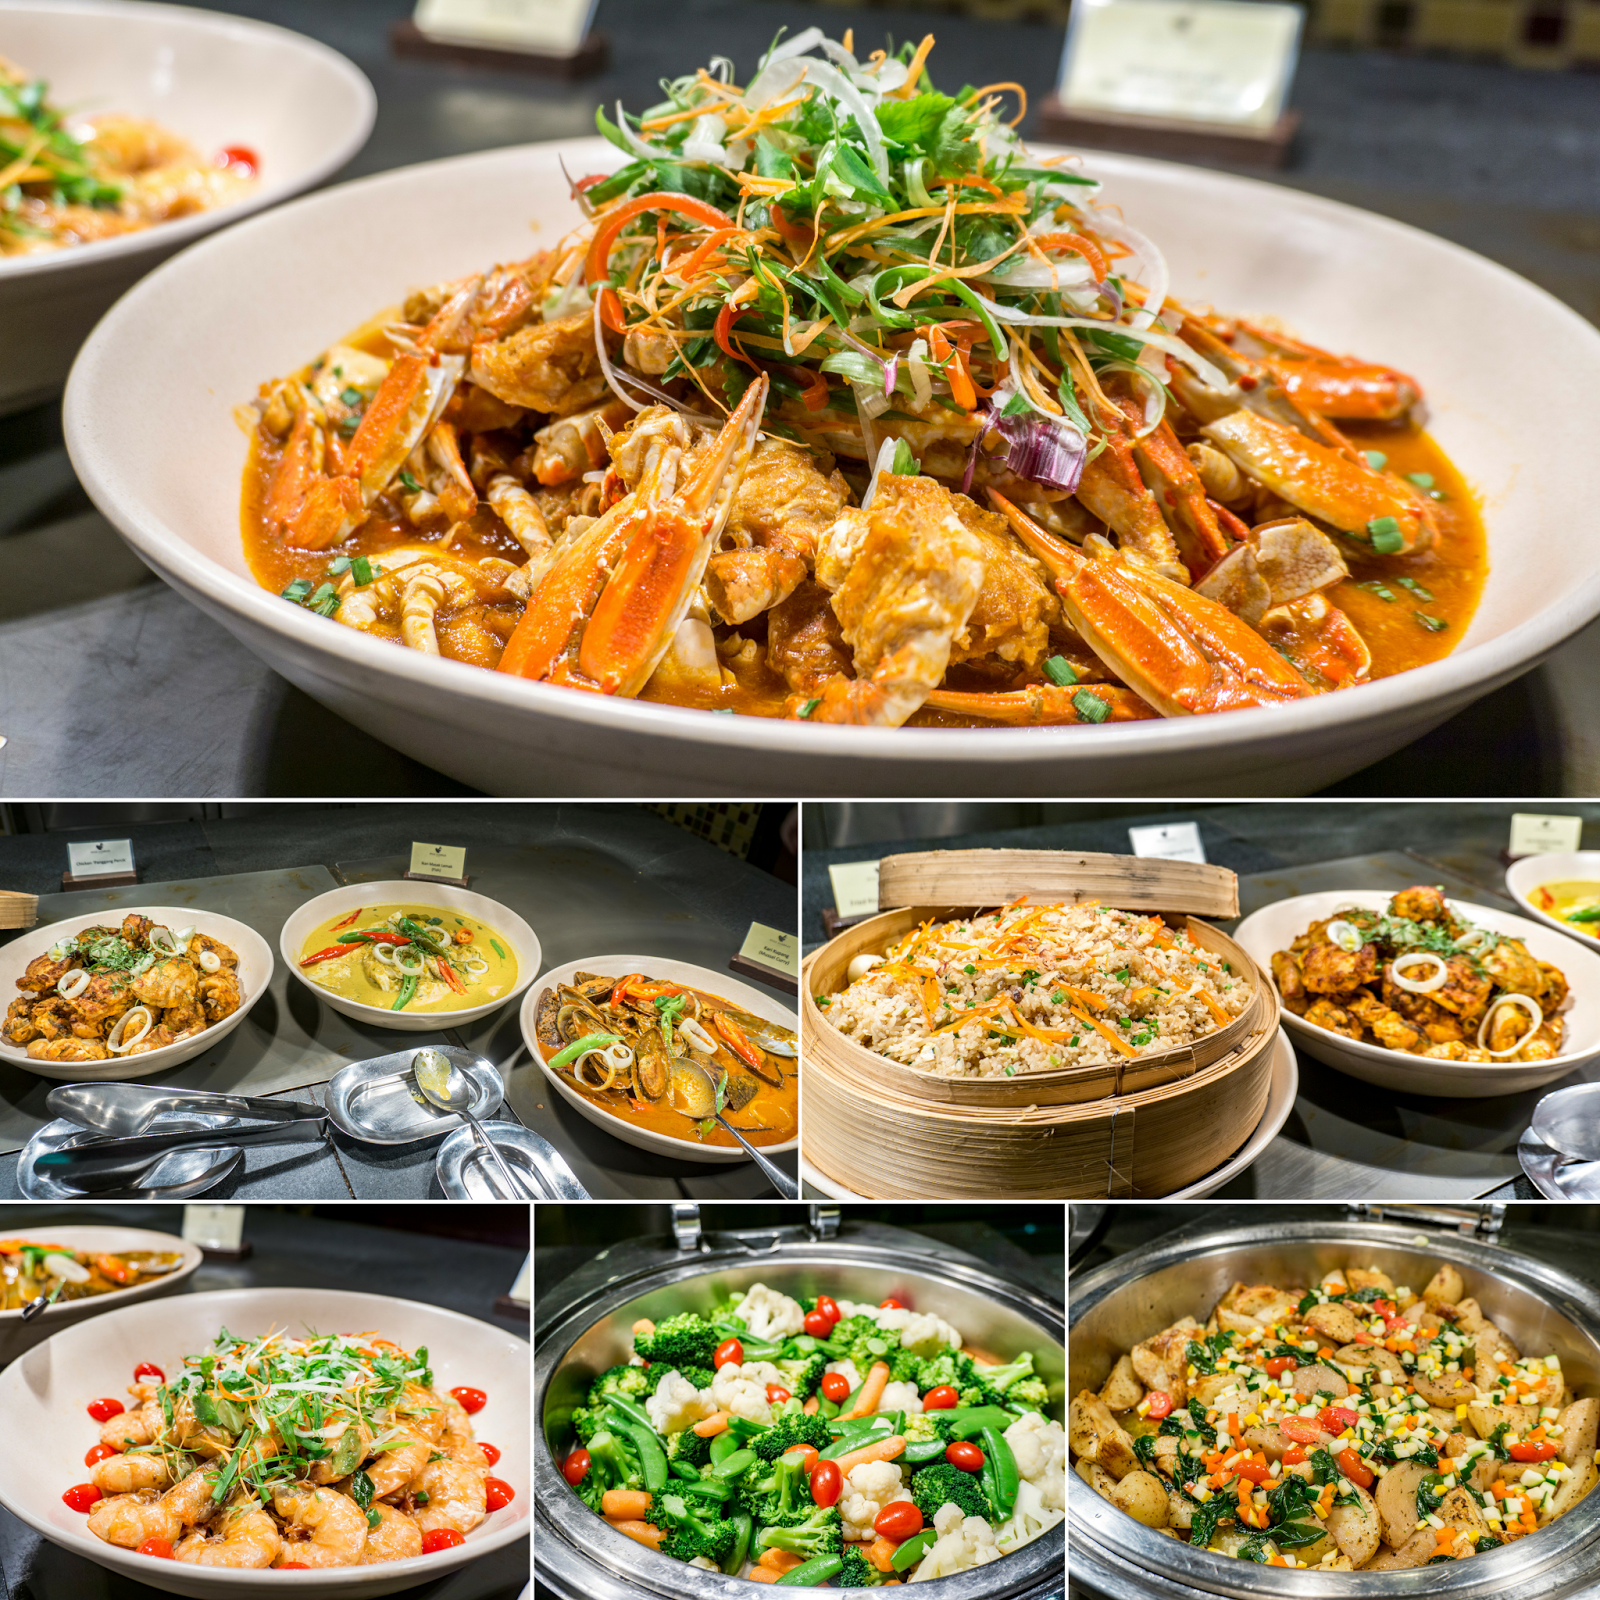 Seafood Buffet Dinner @ Spice Market, Shangri-La's Rasa Sayang Resort & Spa, Batu Ferringhi, Penang